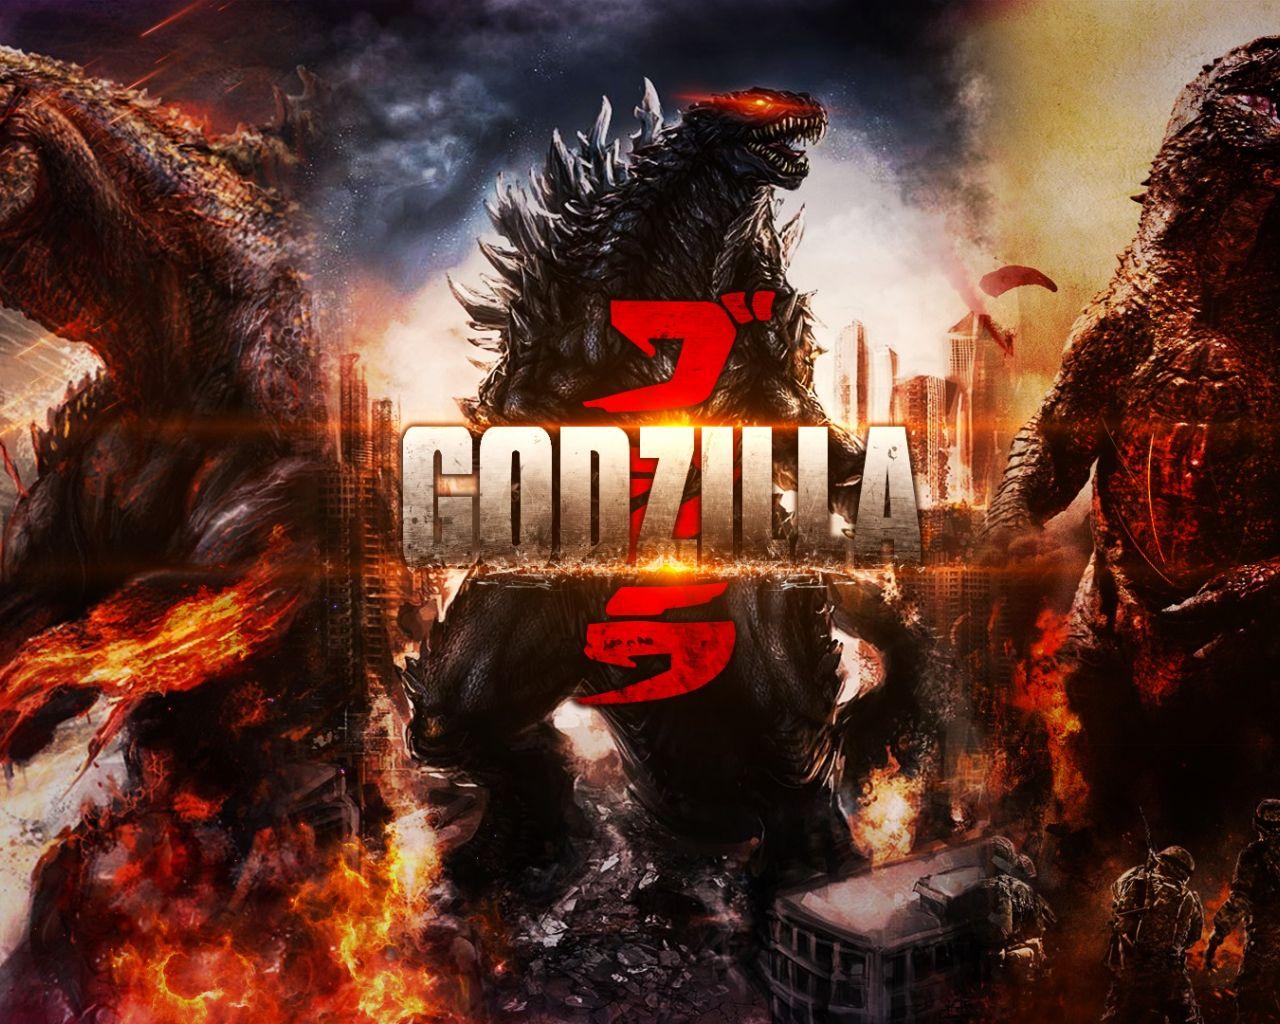 Godzilla Art Wallpapers - Top Free Godzilla Art Backgrounds ...